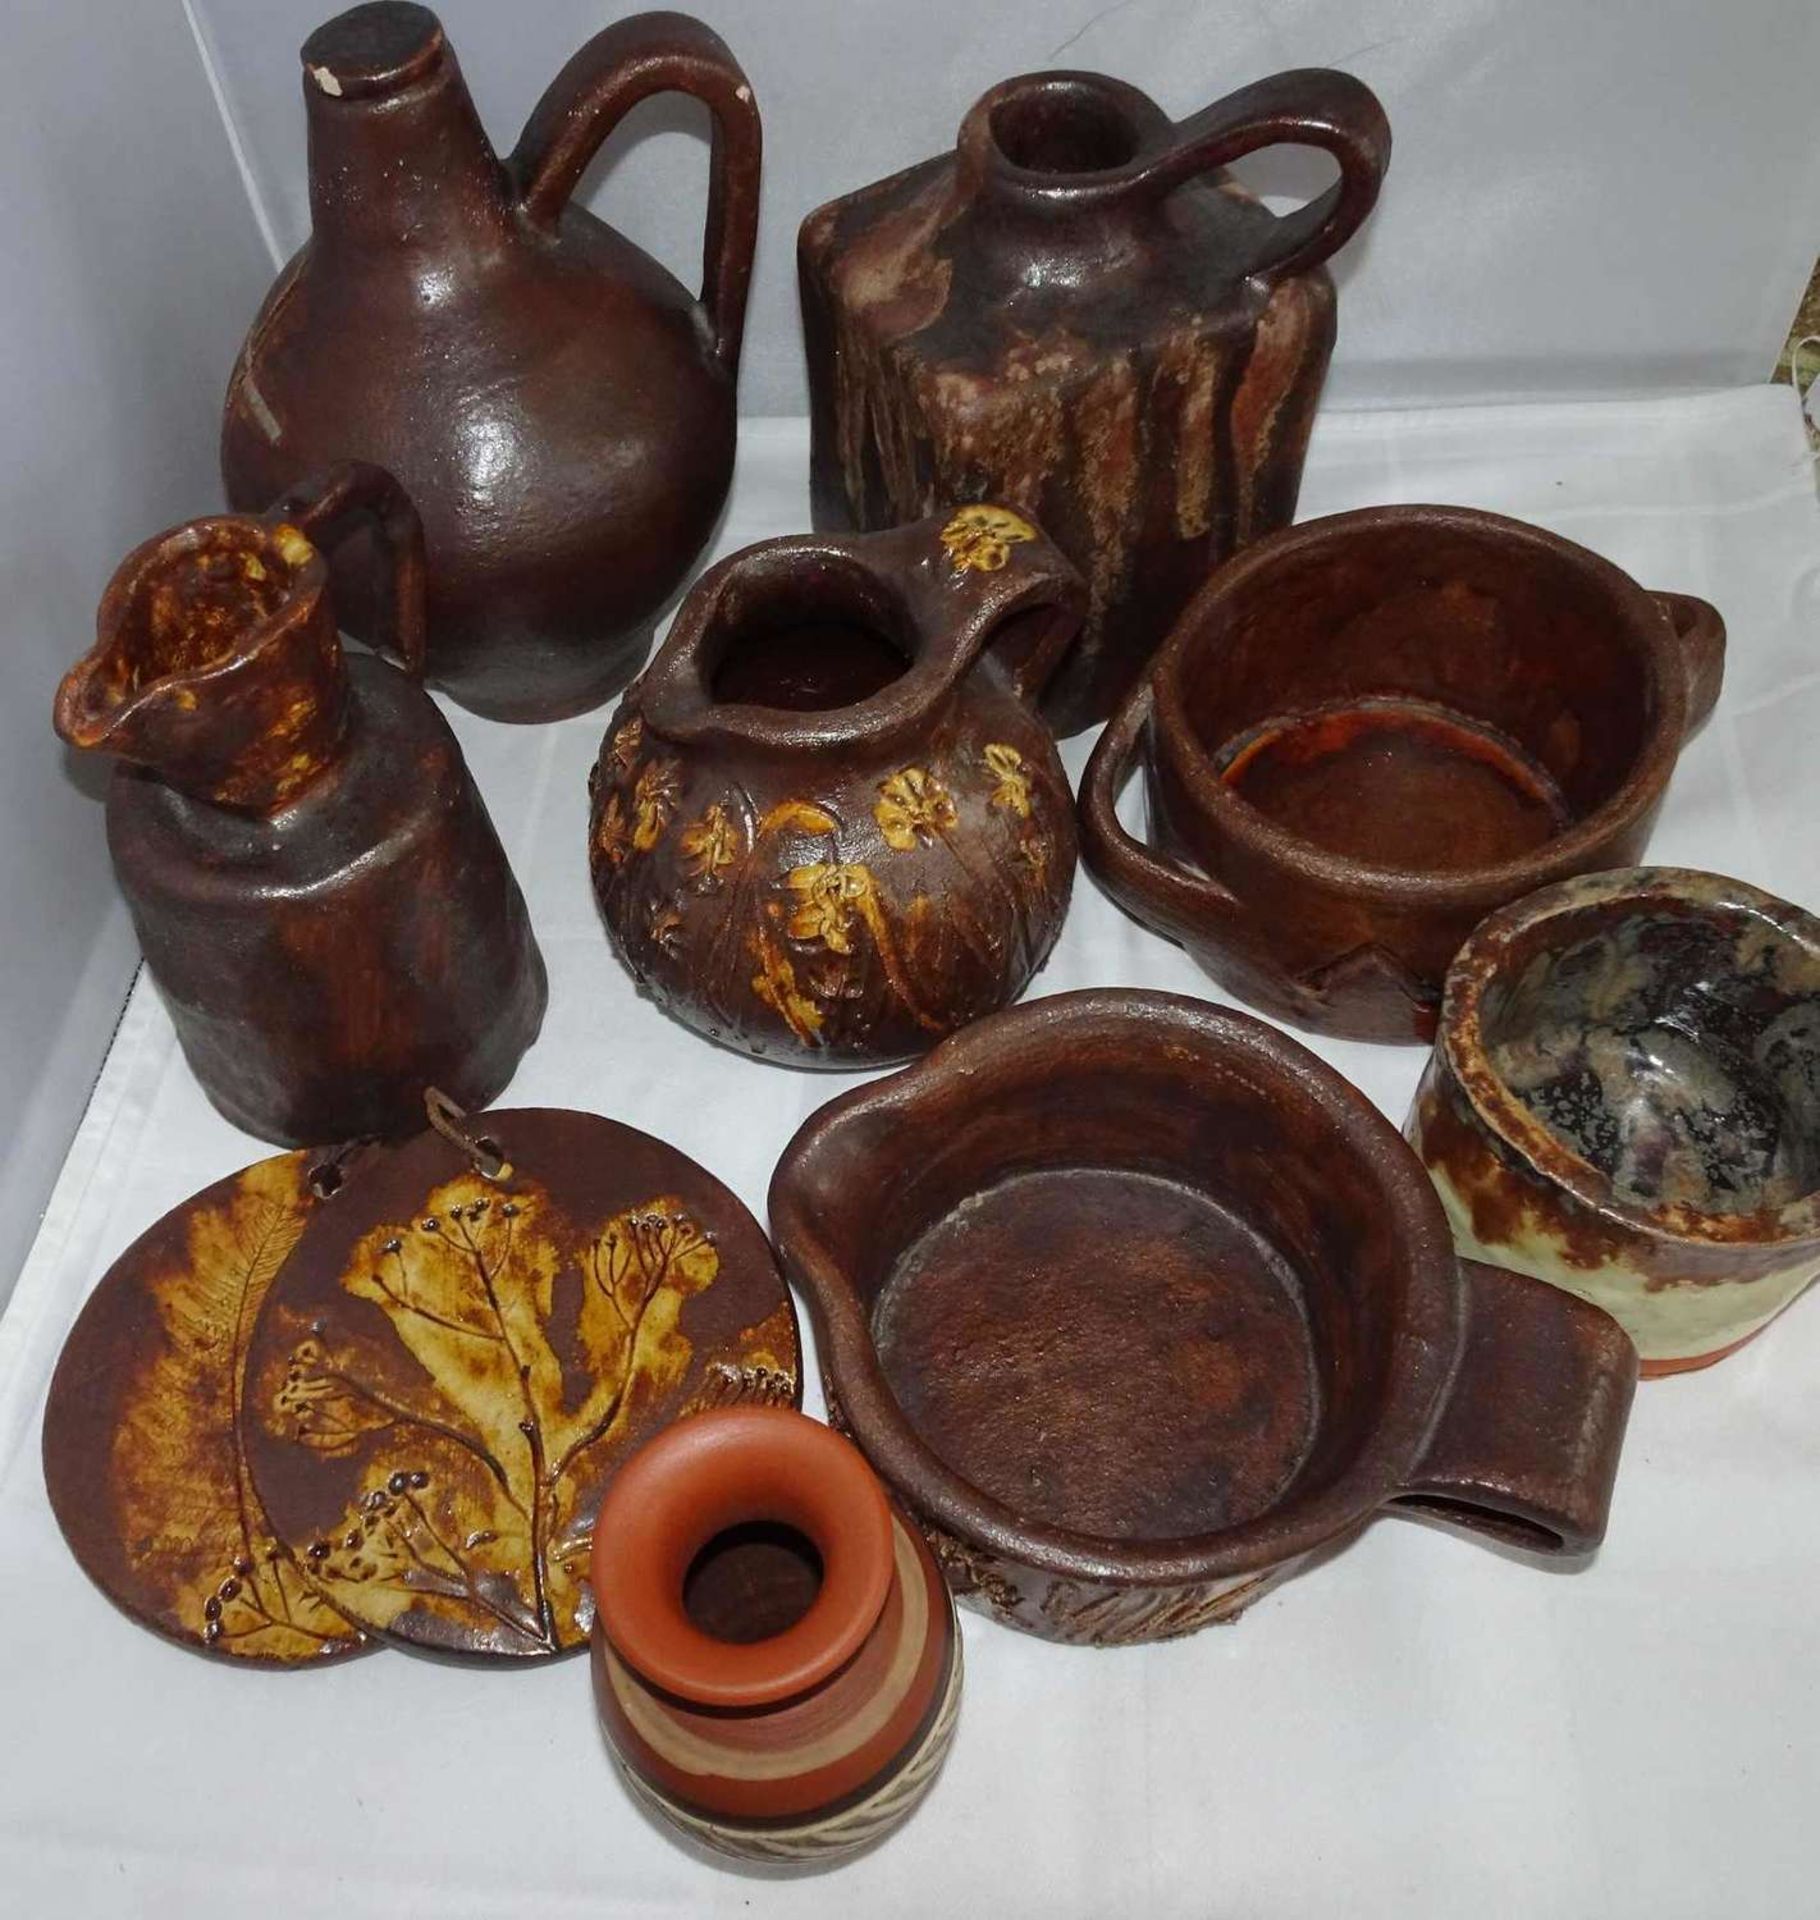 Lot Keramik, braun lasiert, meist signiert mit GEH, dabei Vasen, Krüge, Töpfe, etc. Bitte